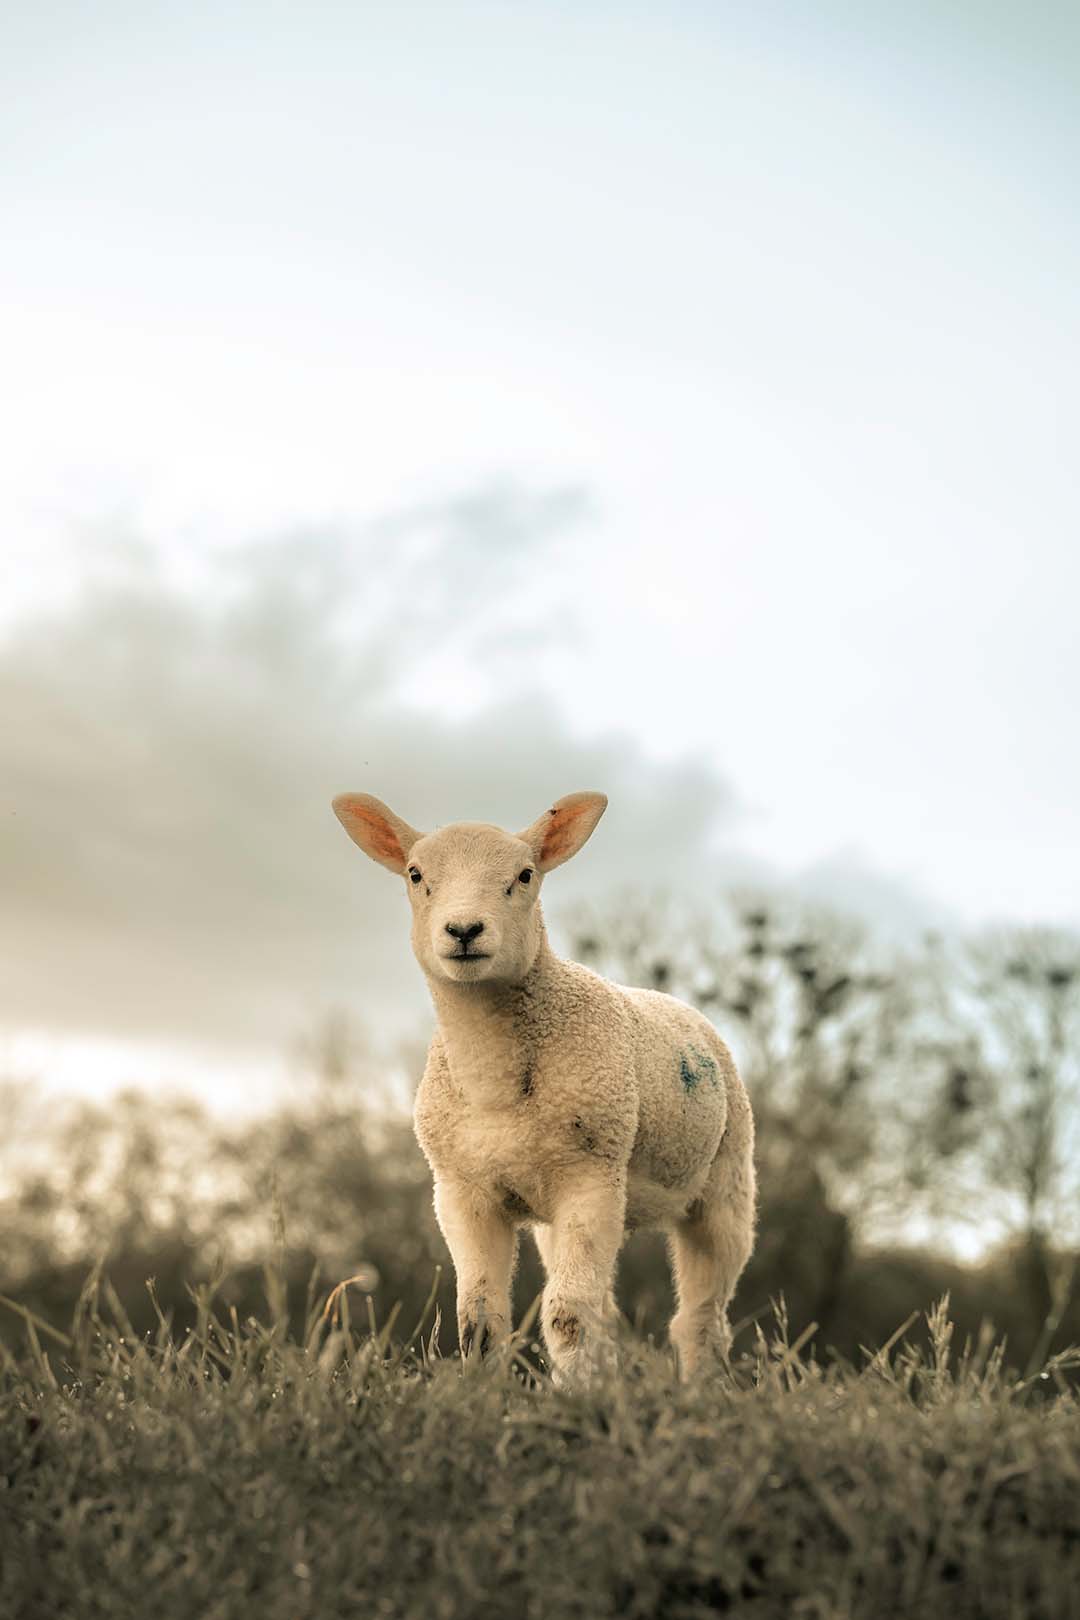 a single small lamb standing alone